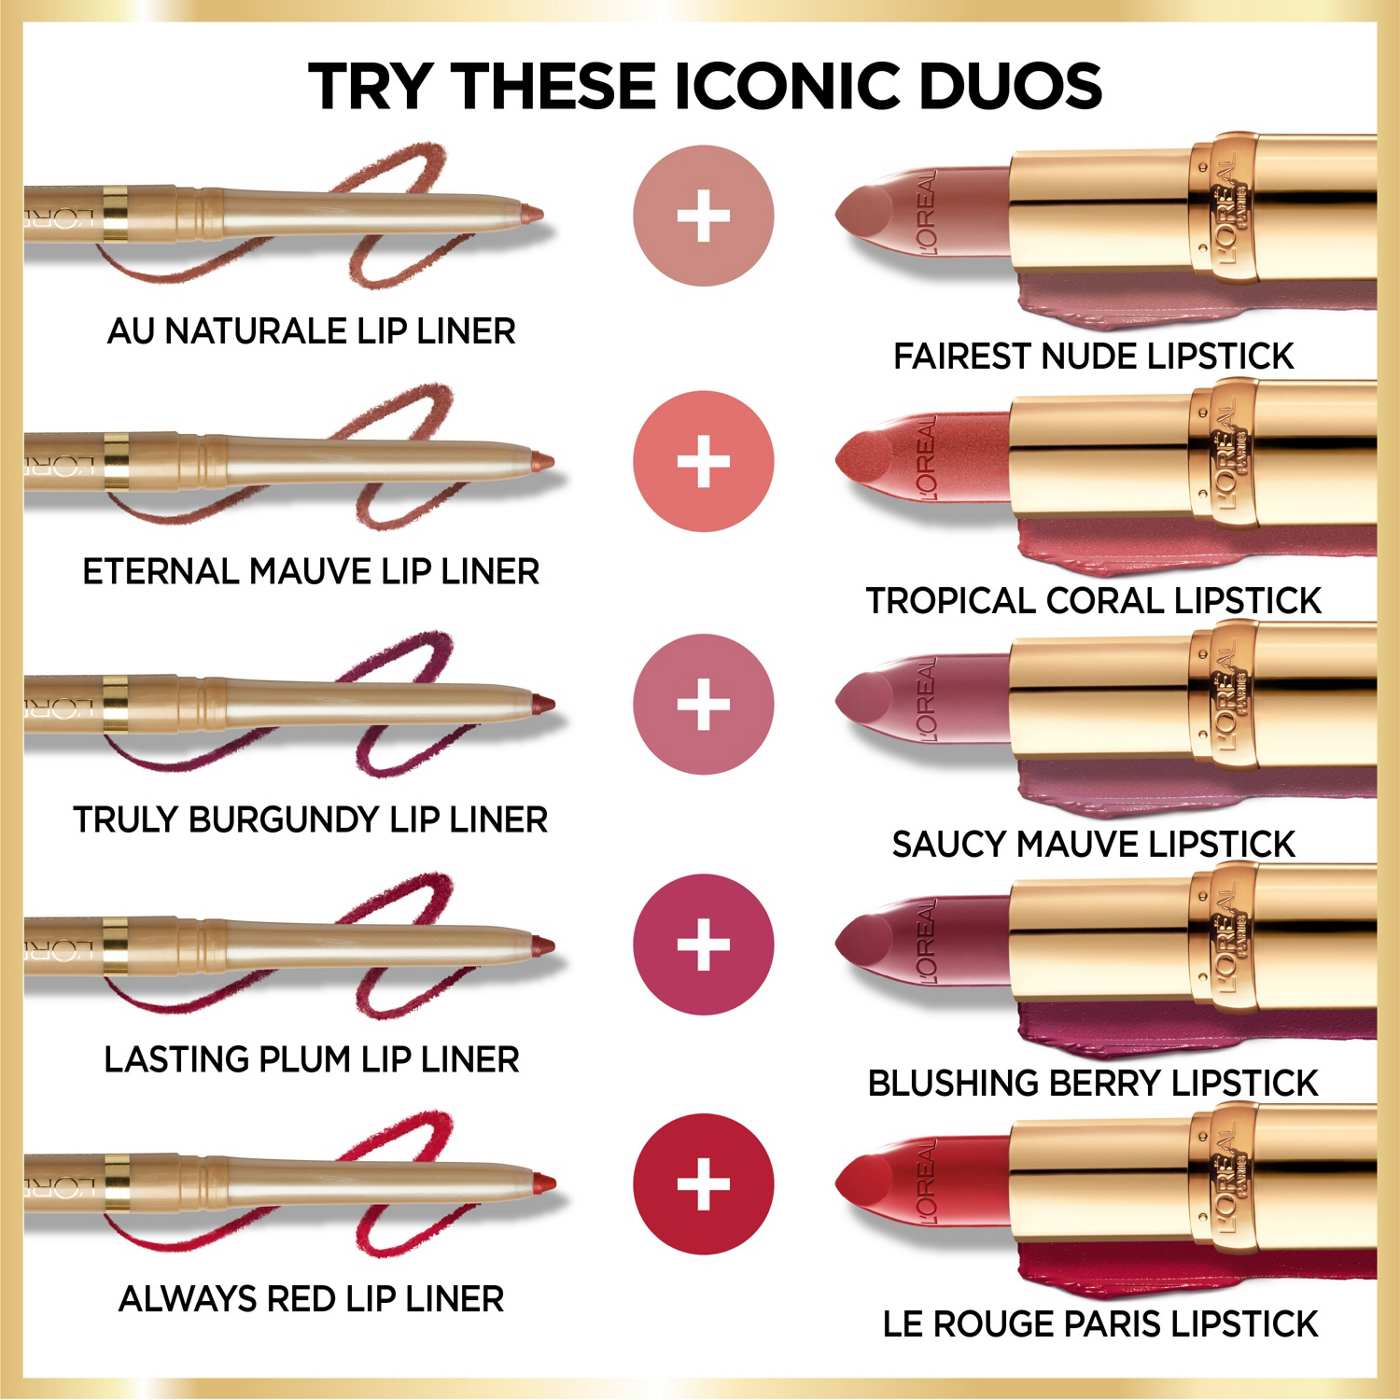 L'Oréal Paris Colour Riche Original Satin Lipstick - Peach Fuzz; image 3 of 5